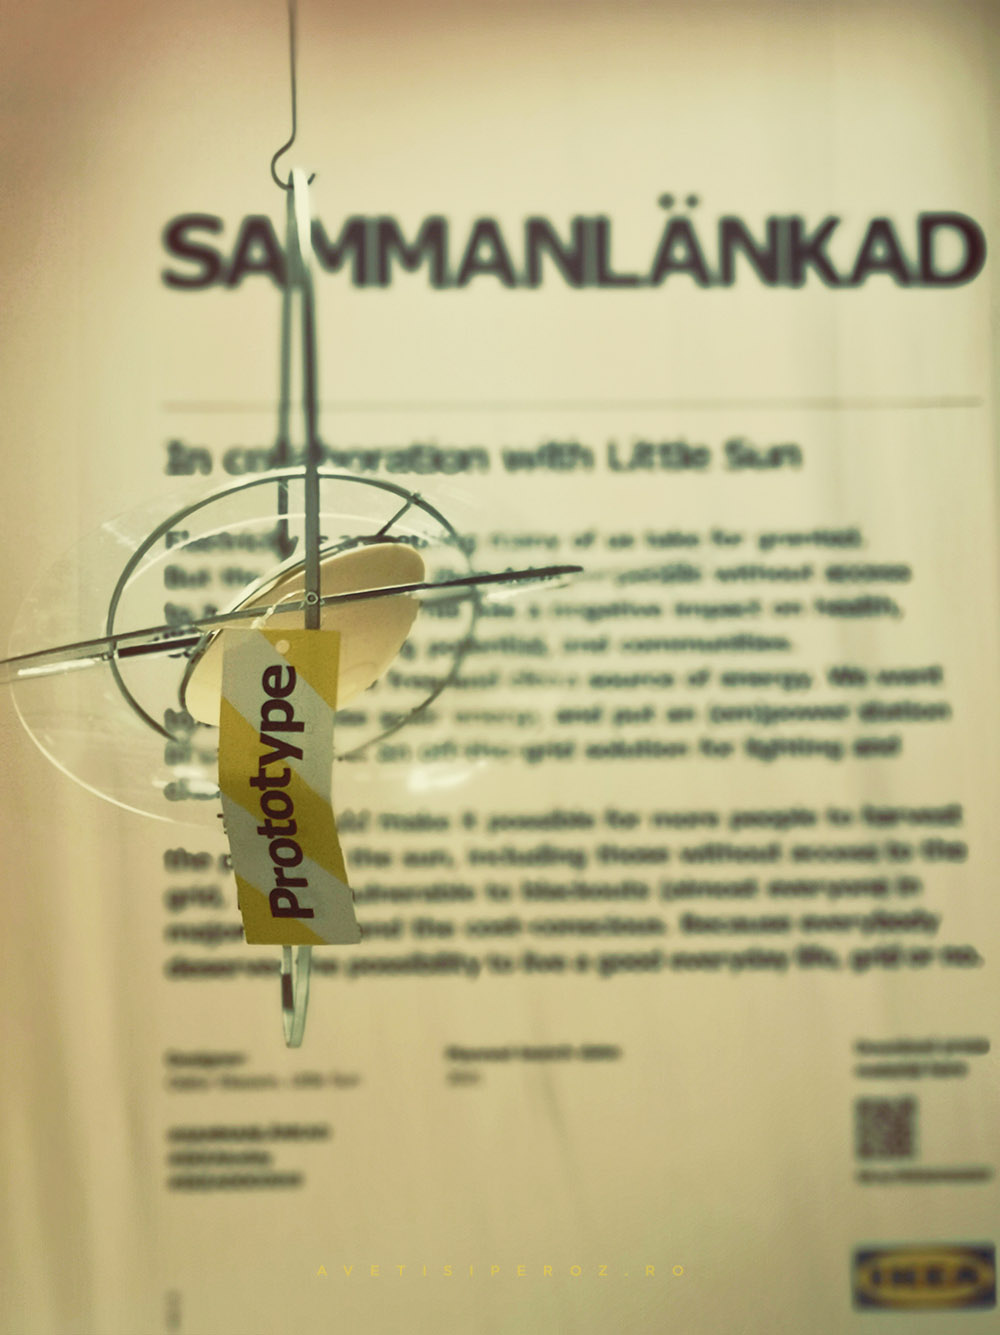 SAMMANLANKAD collection Ikea